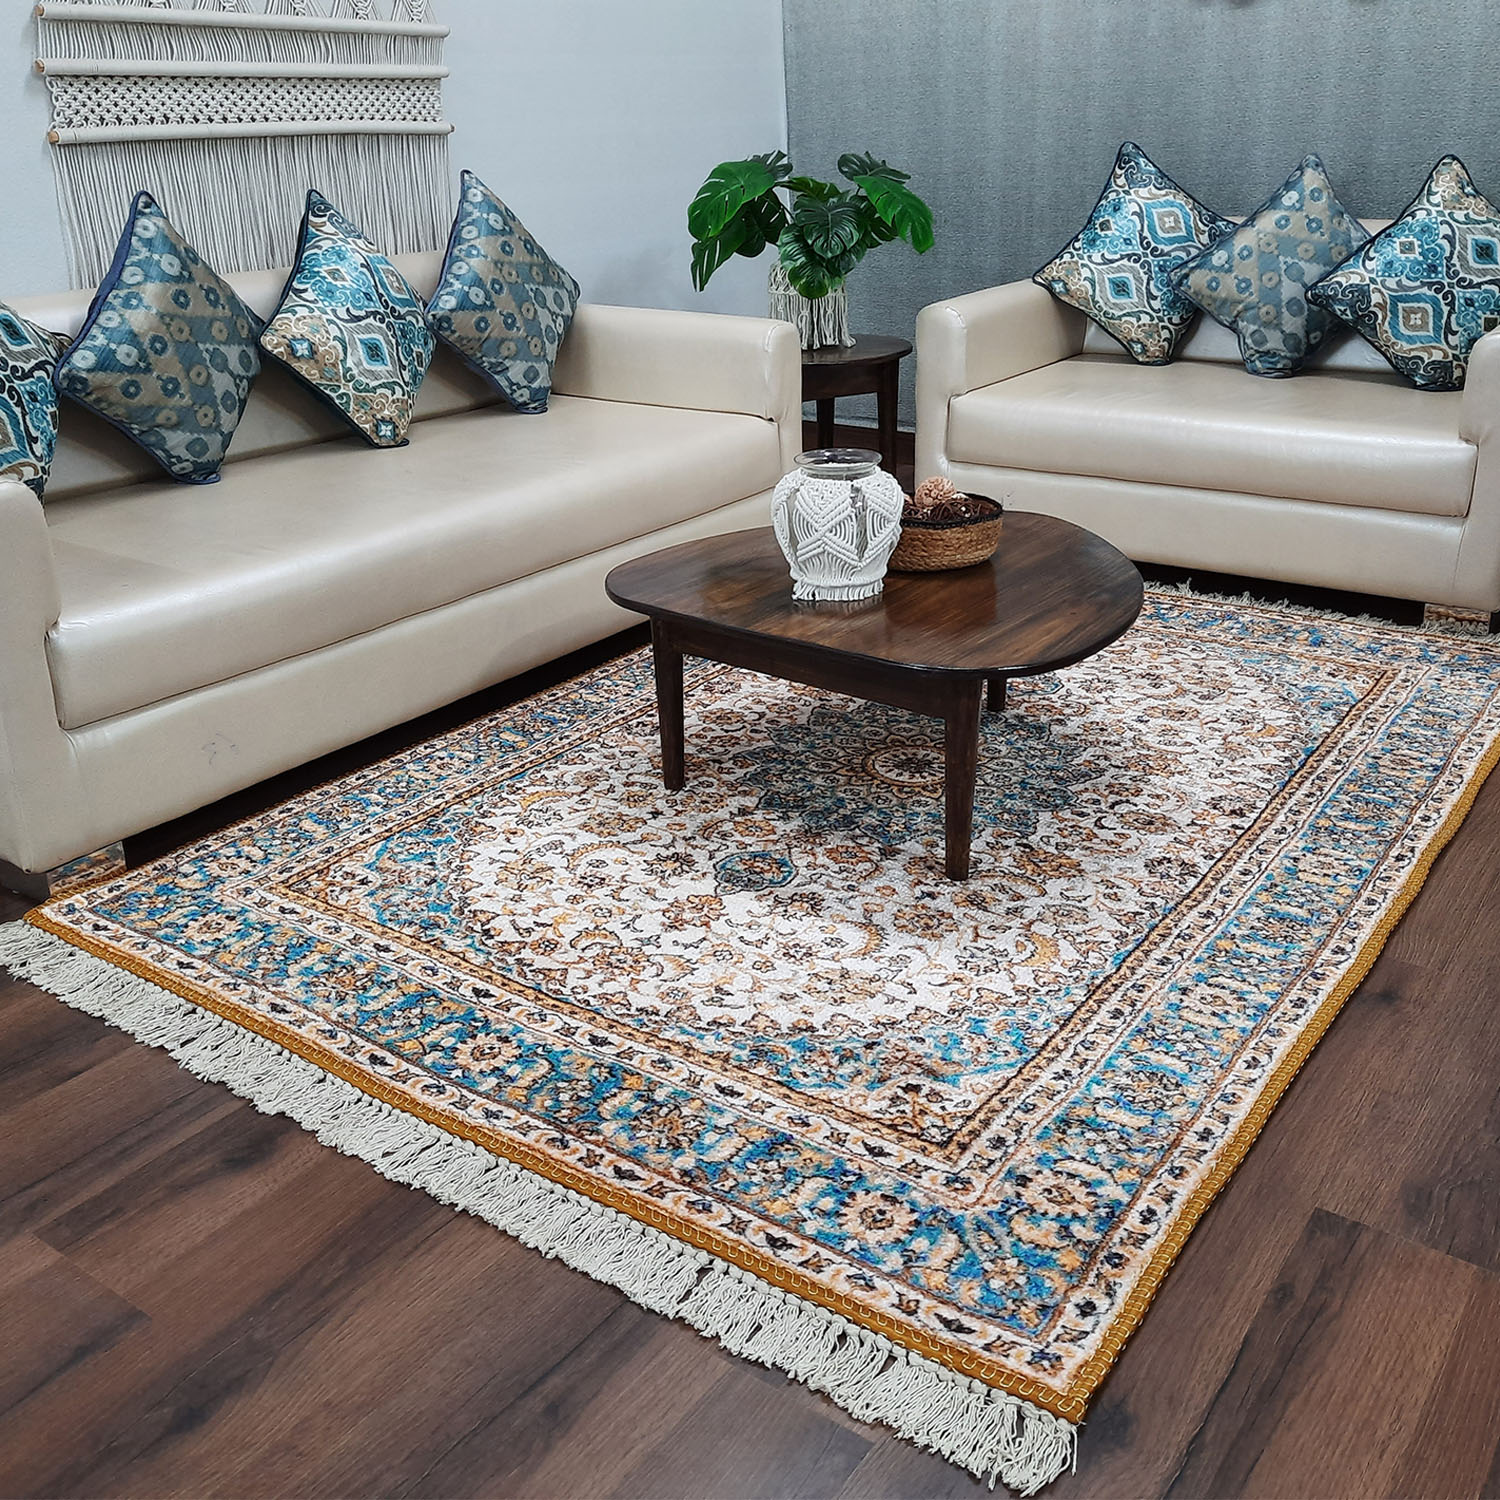 Buy Living Room Carpet Online At Best Price - Fatfatiya